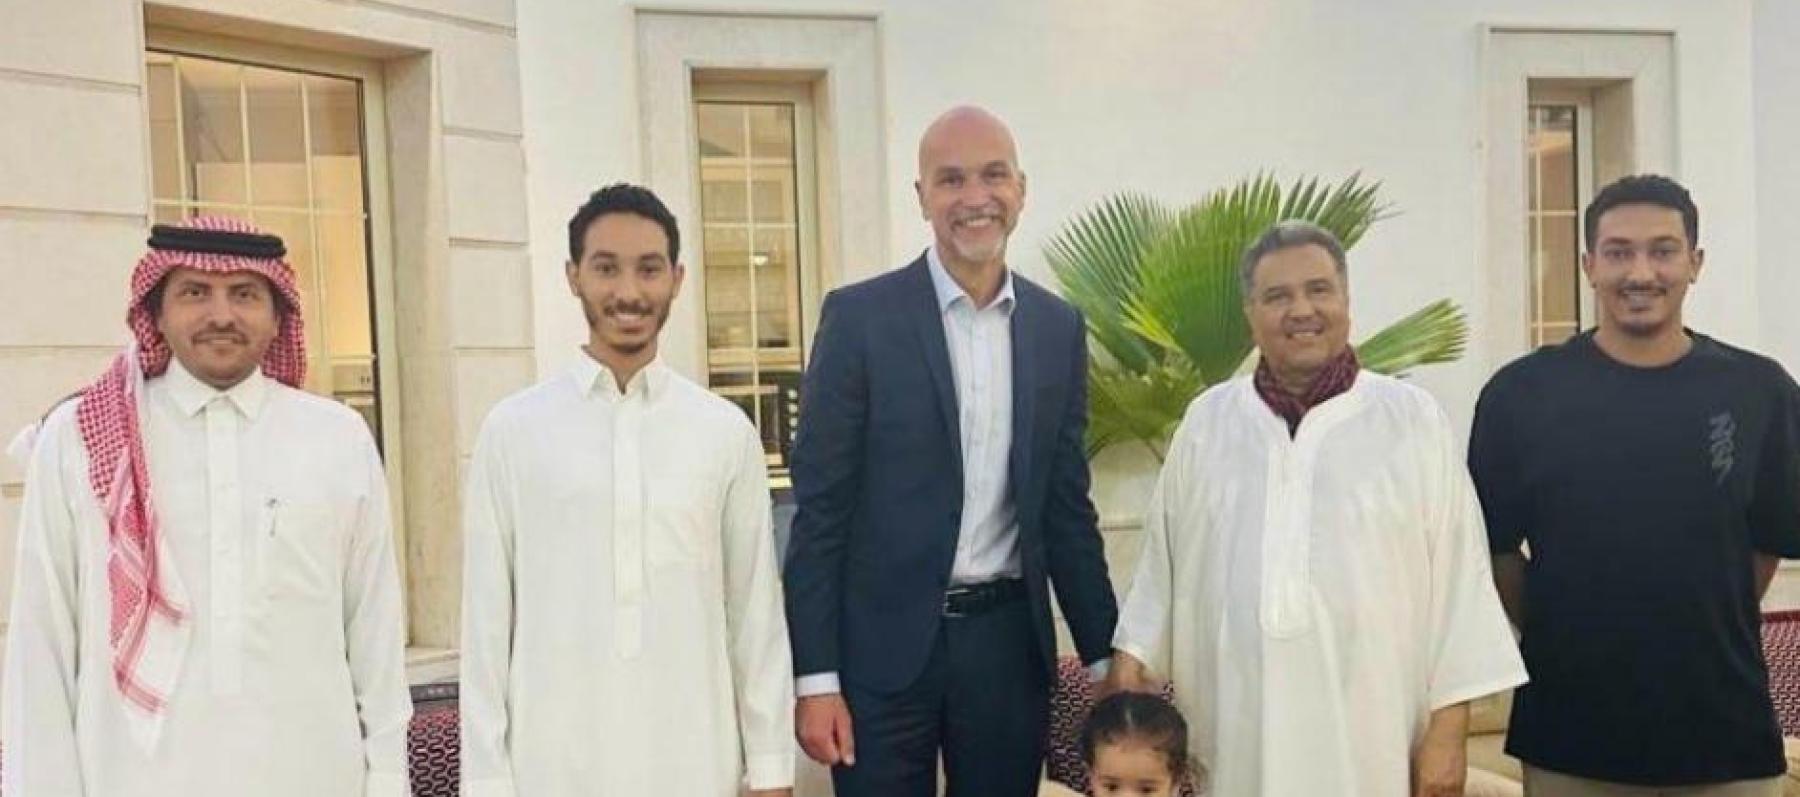 محمد عبده مع قنصل عام فرنسا بجدة السيد محمد نهاض - إكس